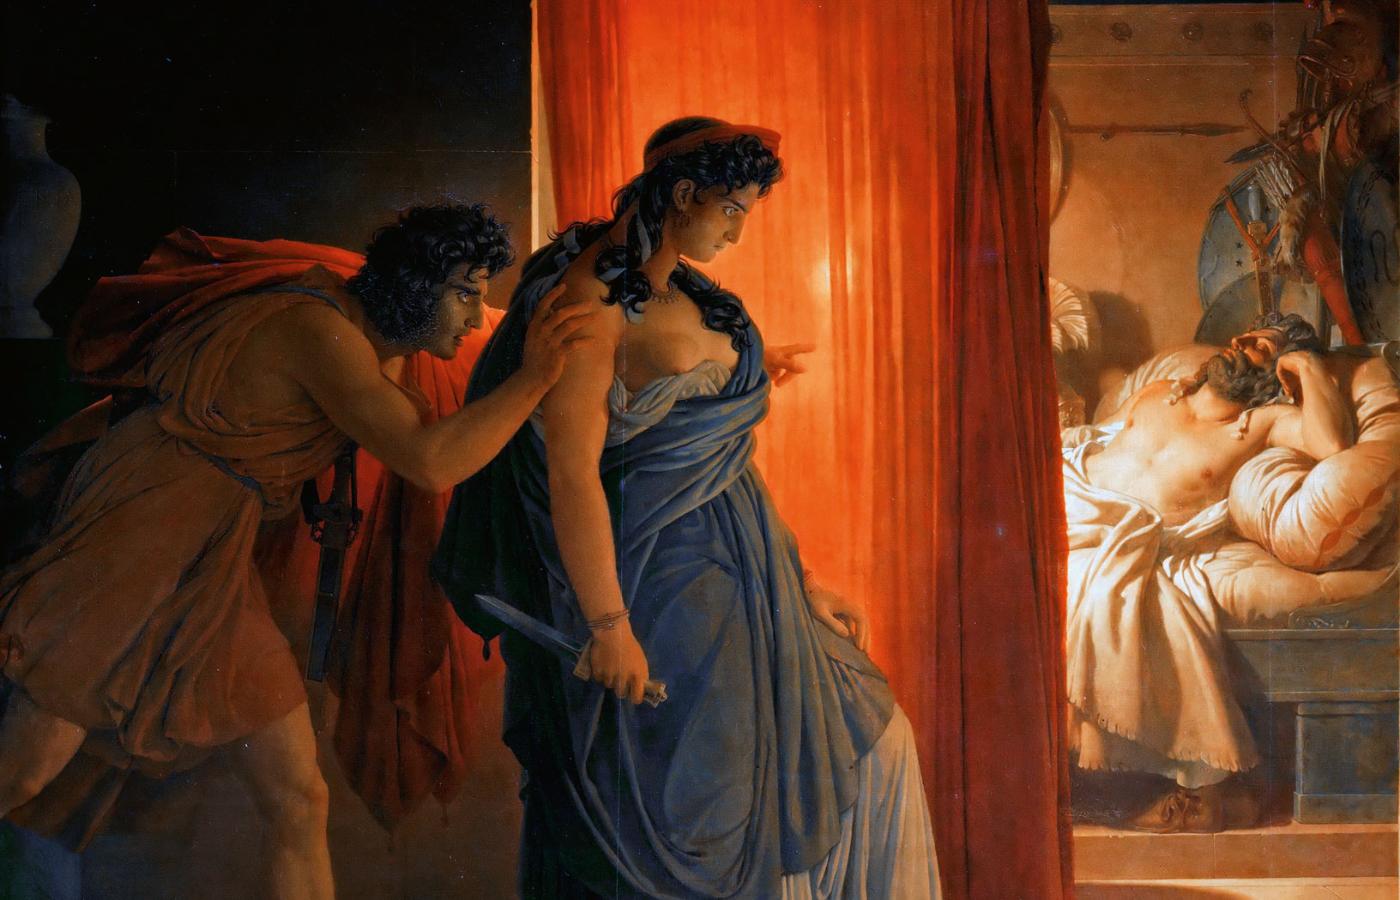 Klitajmestra zamordowała swego męża Agamemnona nie tylko za to, że zgodził się złożyć w ofierze Artemidzie ich córkę Ifigenię, ale także dlatego, że był po prostu chamem i gwałcicielem.